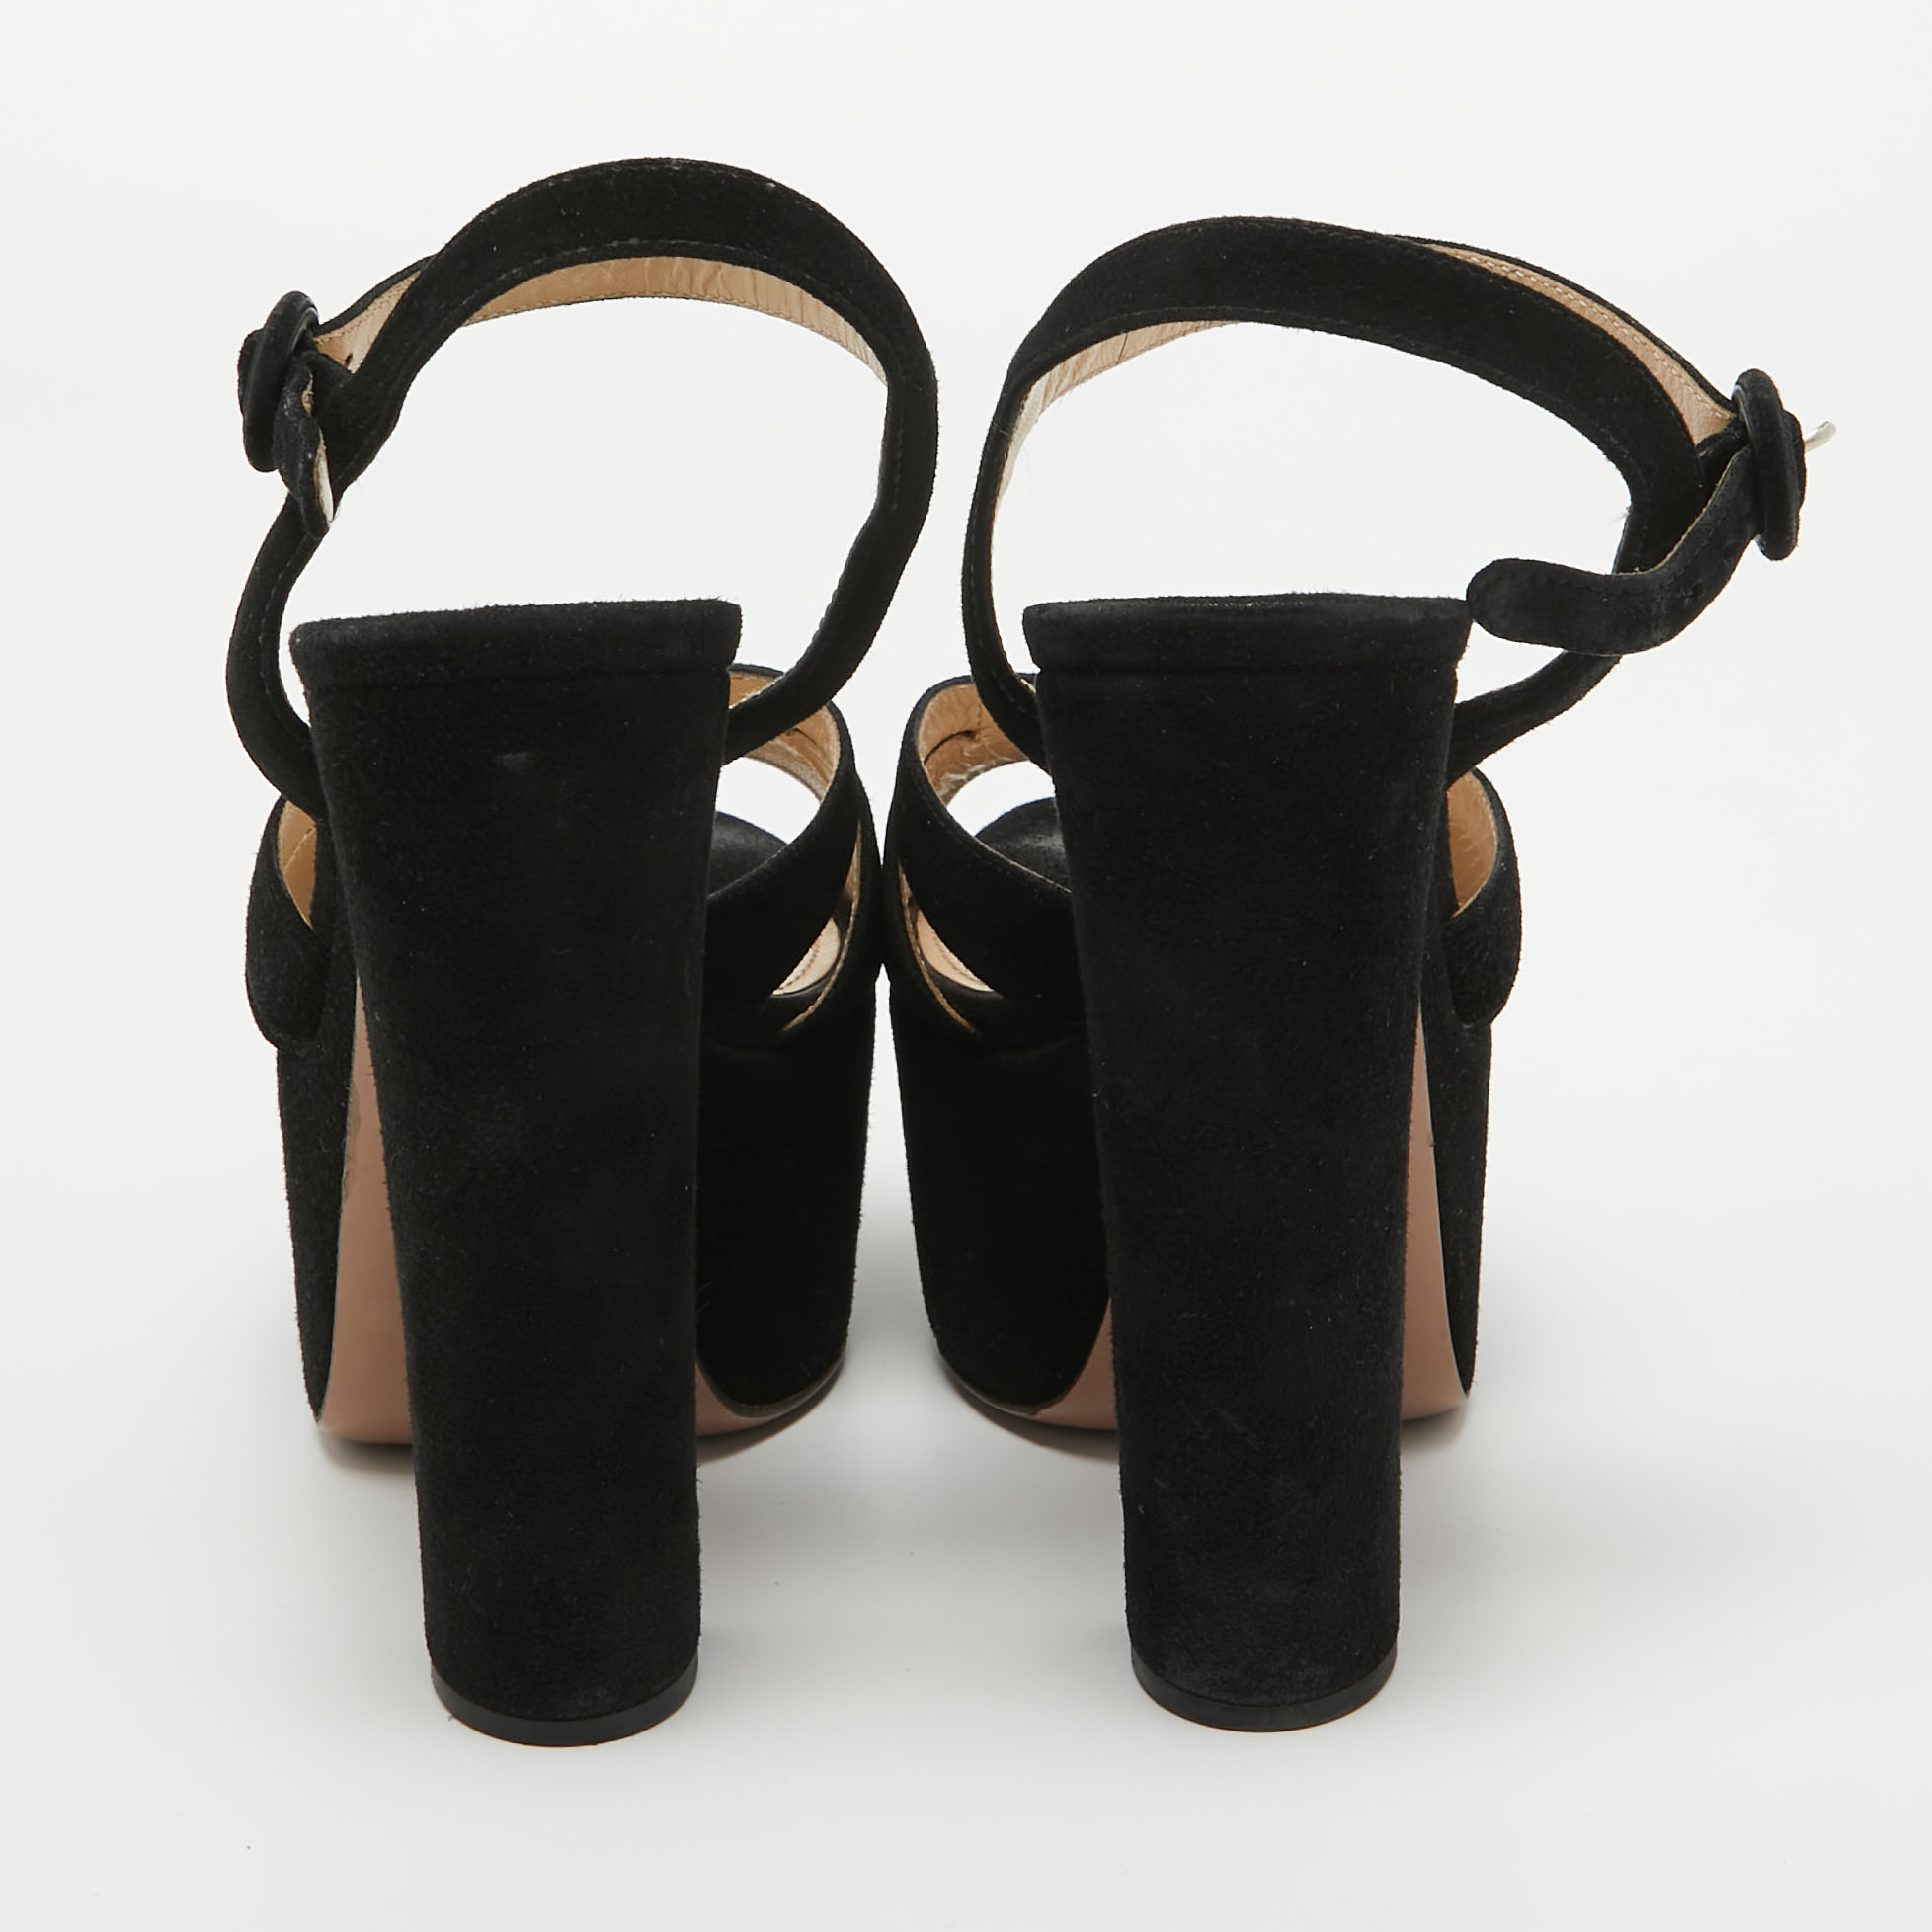 Prada Black Suede Platform Ankle Strap Sandals Size 39.5